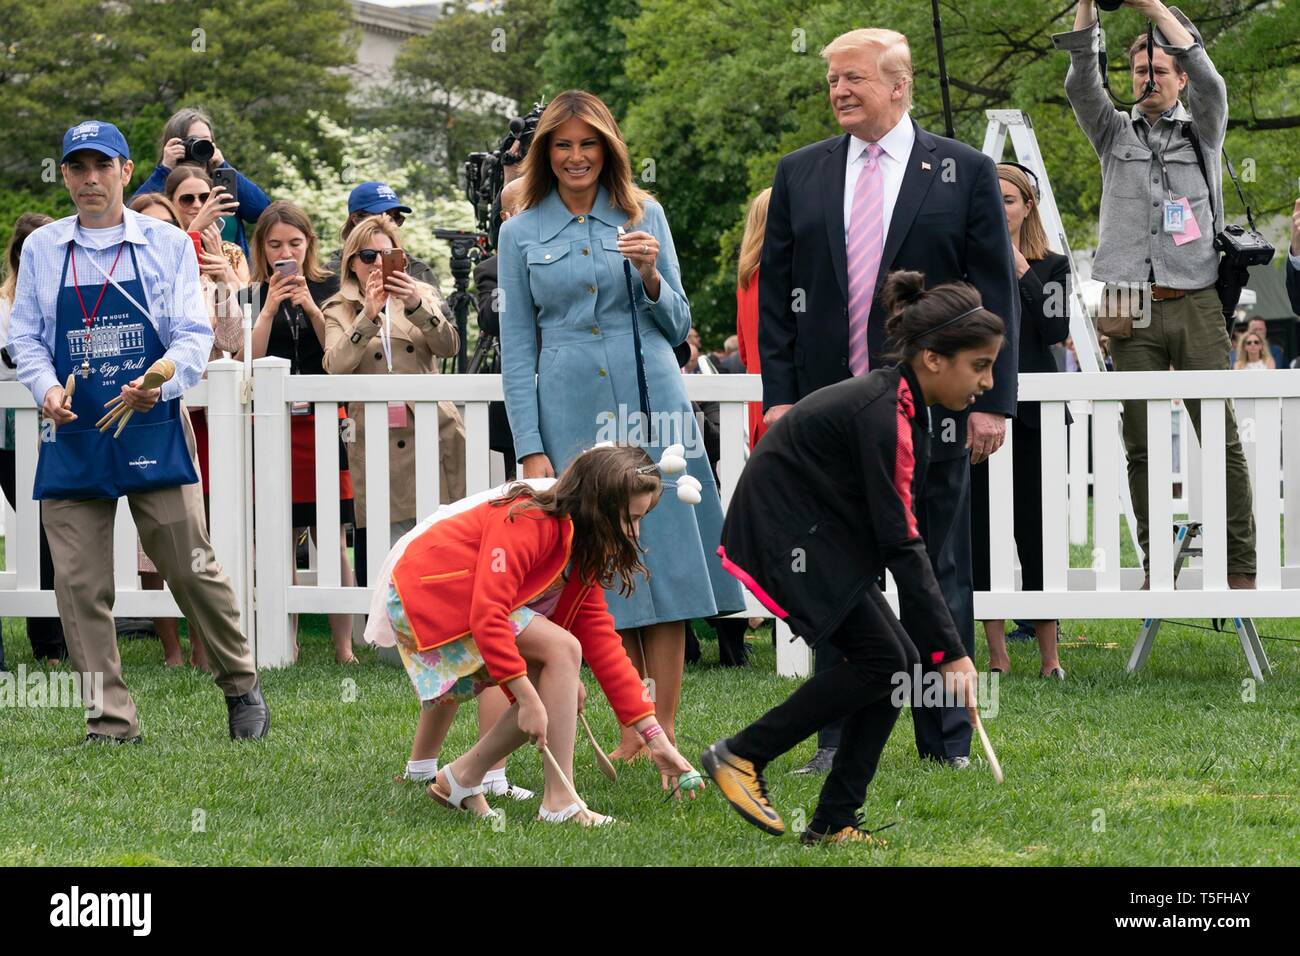 Us-Präsident Donald Trump und First Lady Melania Trump beobachten Die eierbrötchen Rennen während der jährlichen Weiße Haus Easter Egg Roll Event auf dem Südrasen des Weißen Hauses April 22, 2019 in Washington, DC. Dies ist das 141 Jahr für das Frühjahr stattfindenden Veranstaltung. Stockfoto